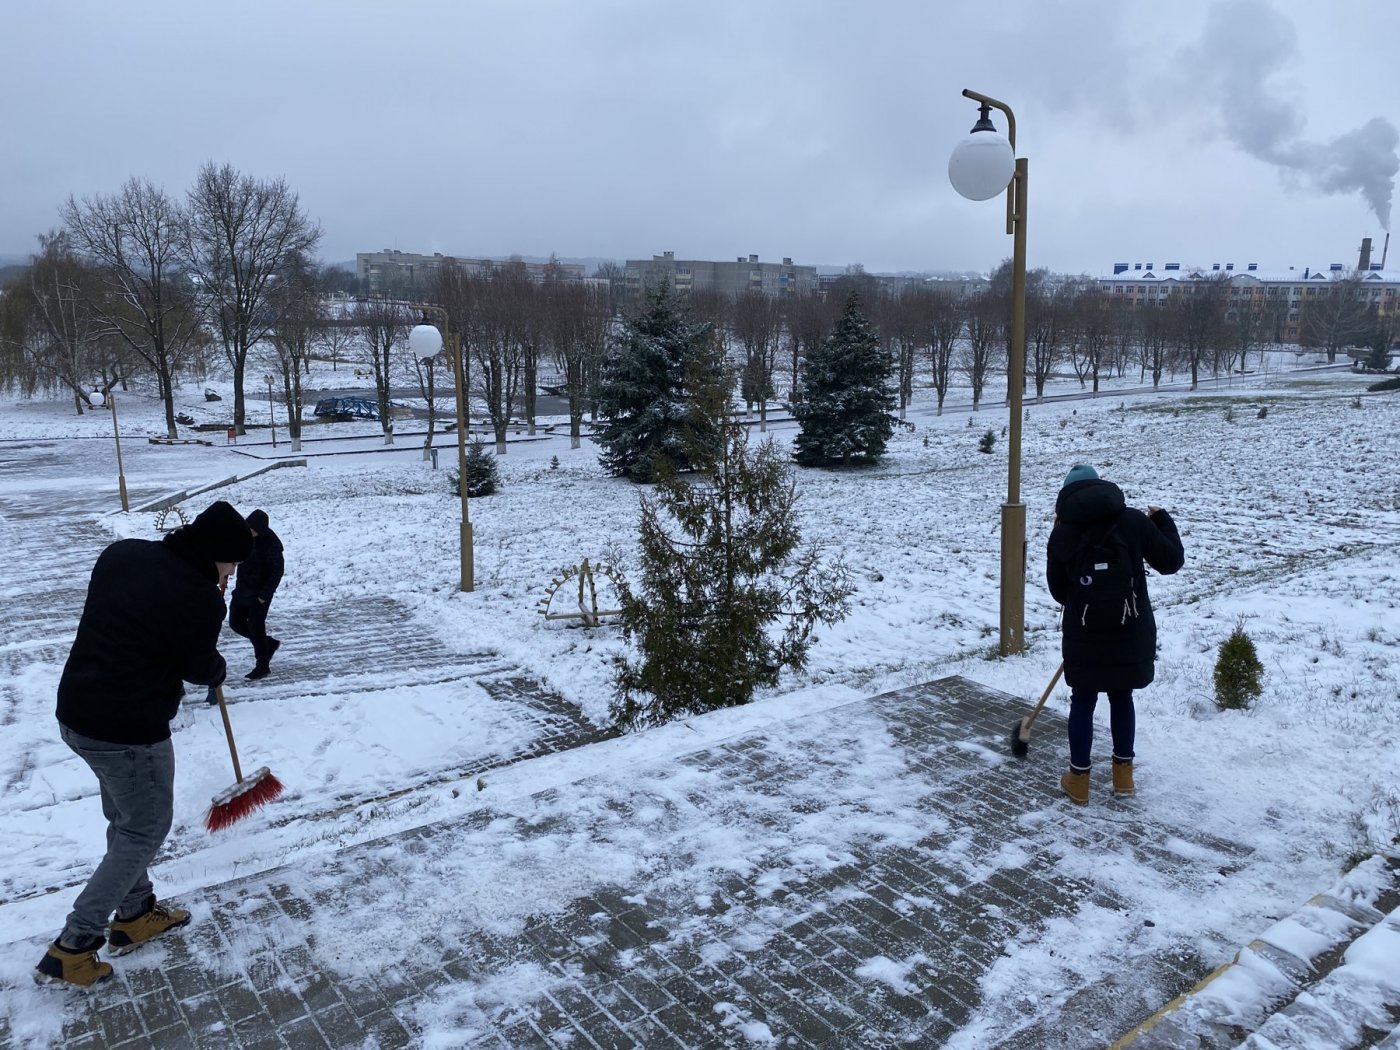 Учащиеся гимназии приняли участие в операции «Снежный бум» расчистка снега на территории братской могилы советских воинов и партизан